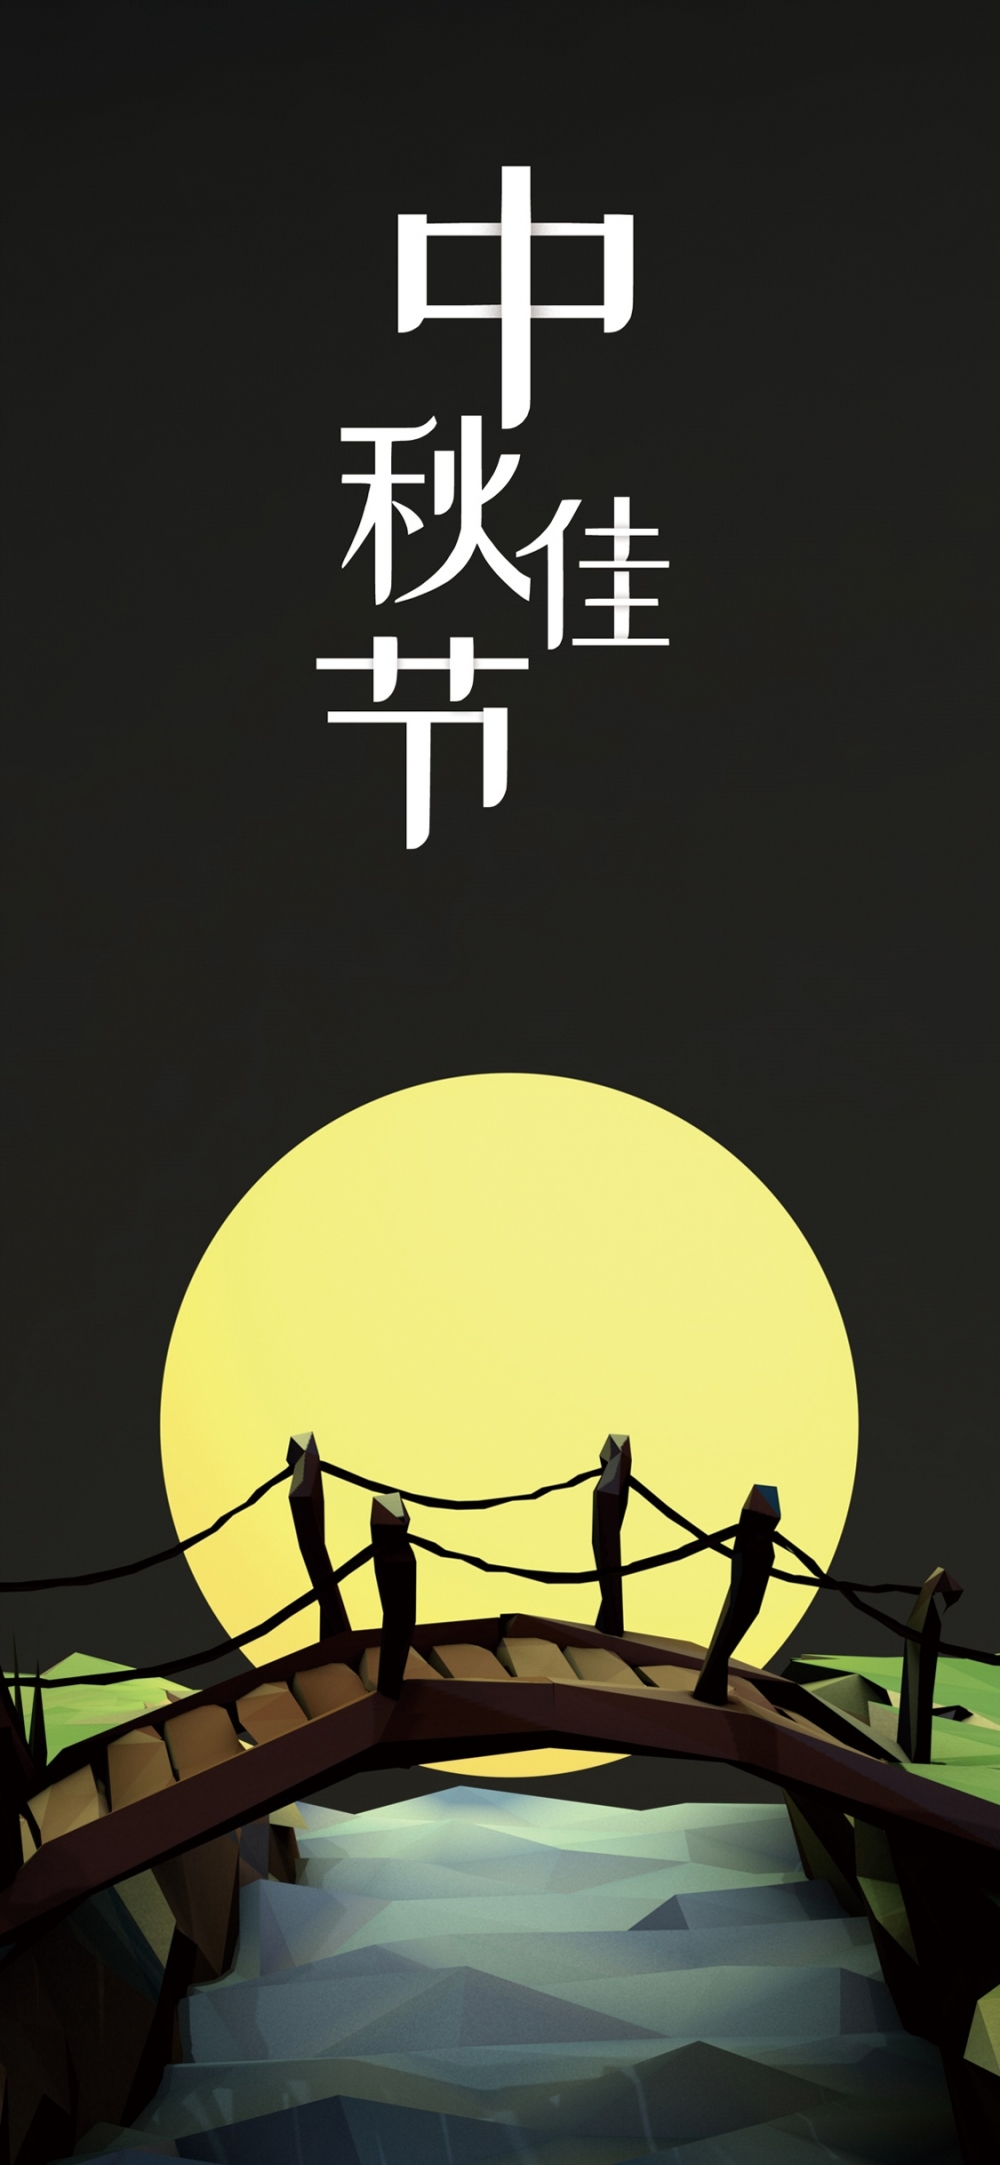 中秋节祝福语唯美文字手绘插画手机壁纸 唯一图库